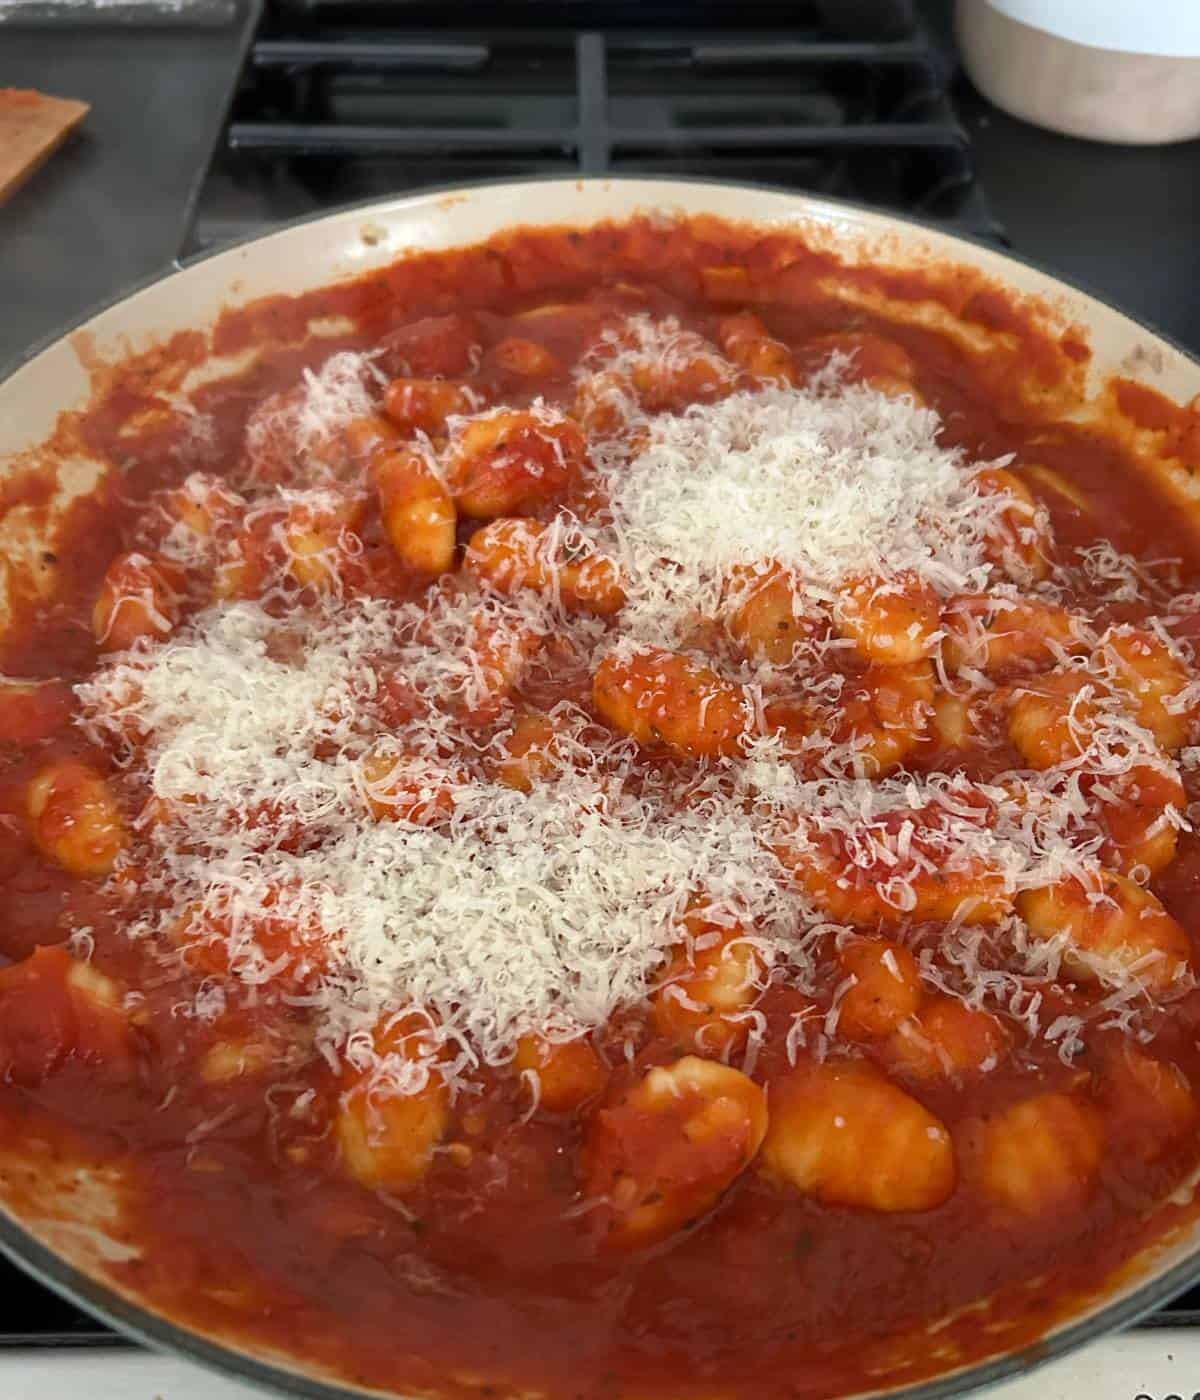 Gnocchi with marinara sauce and parmesan cheese.